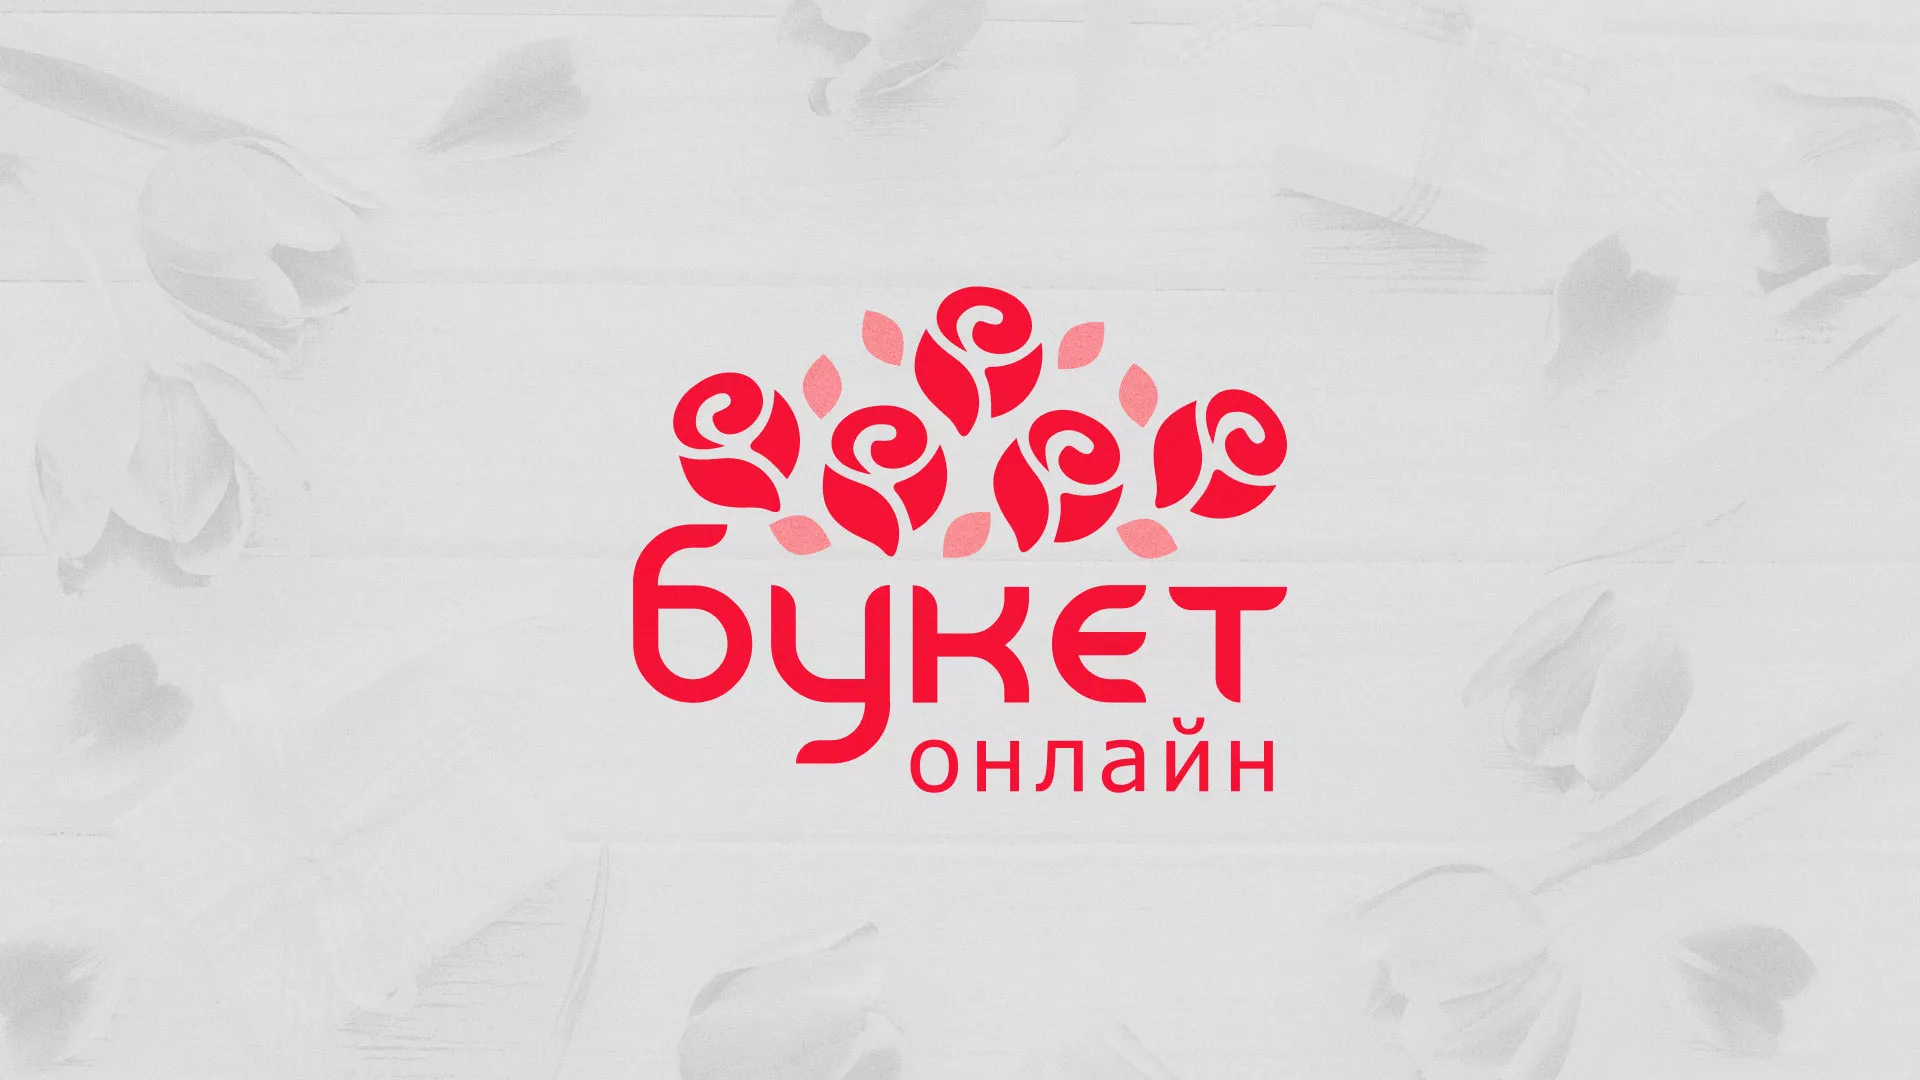 Создание интернет-магазина «Букет-онлайн» по цветам в Усть-Куте